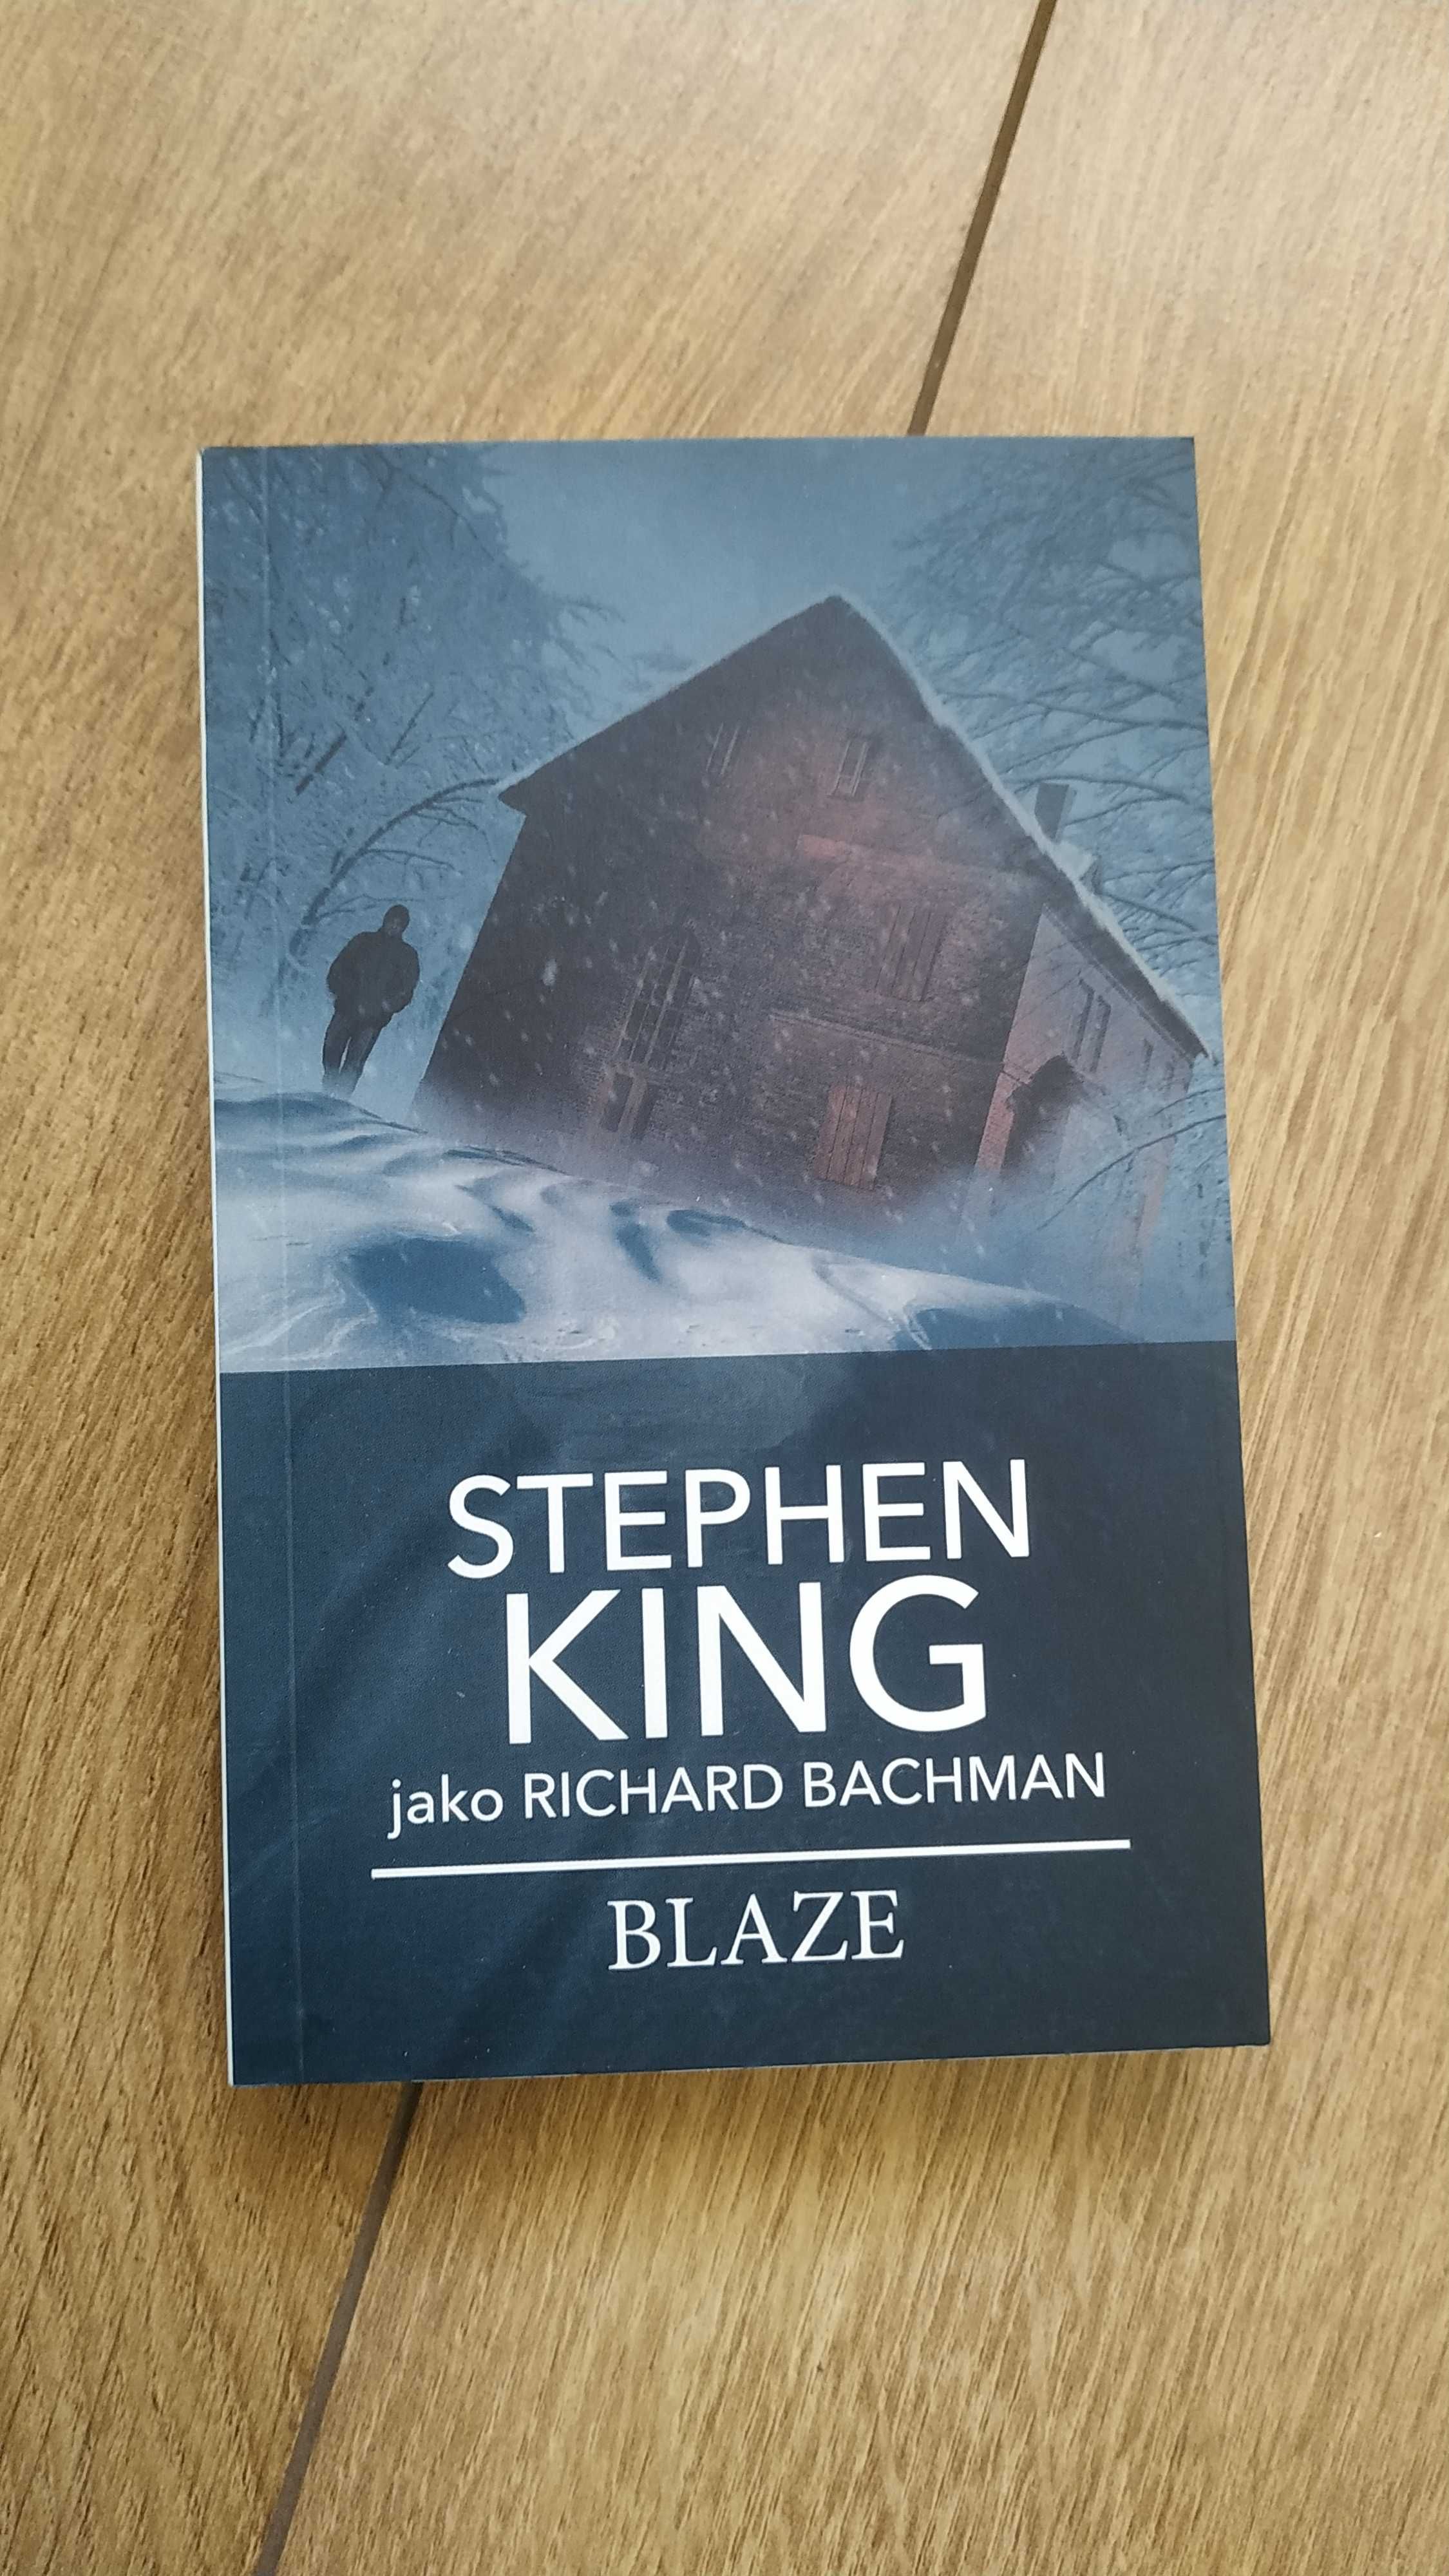 Stephen King (Richard Bachman) - Blaze